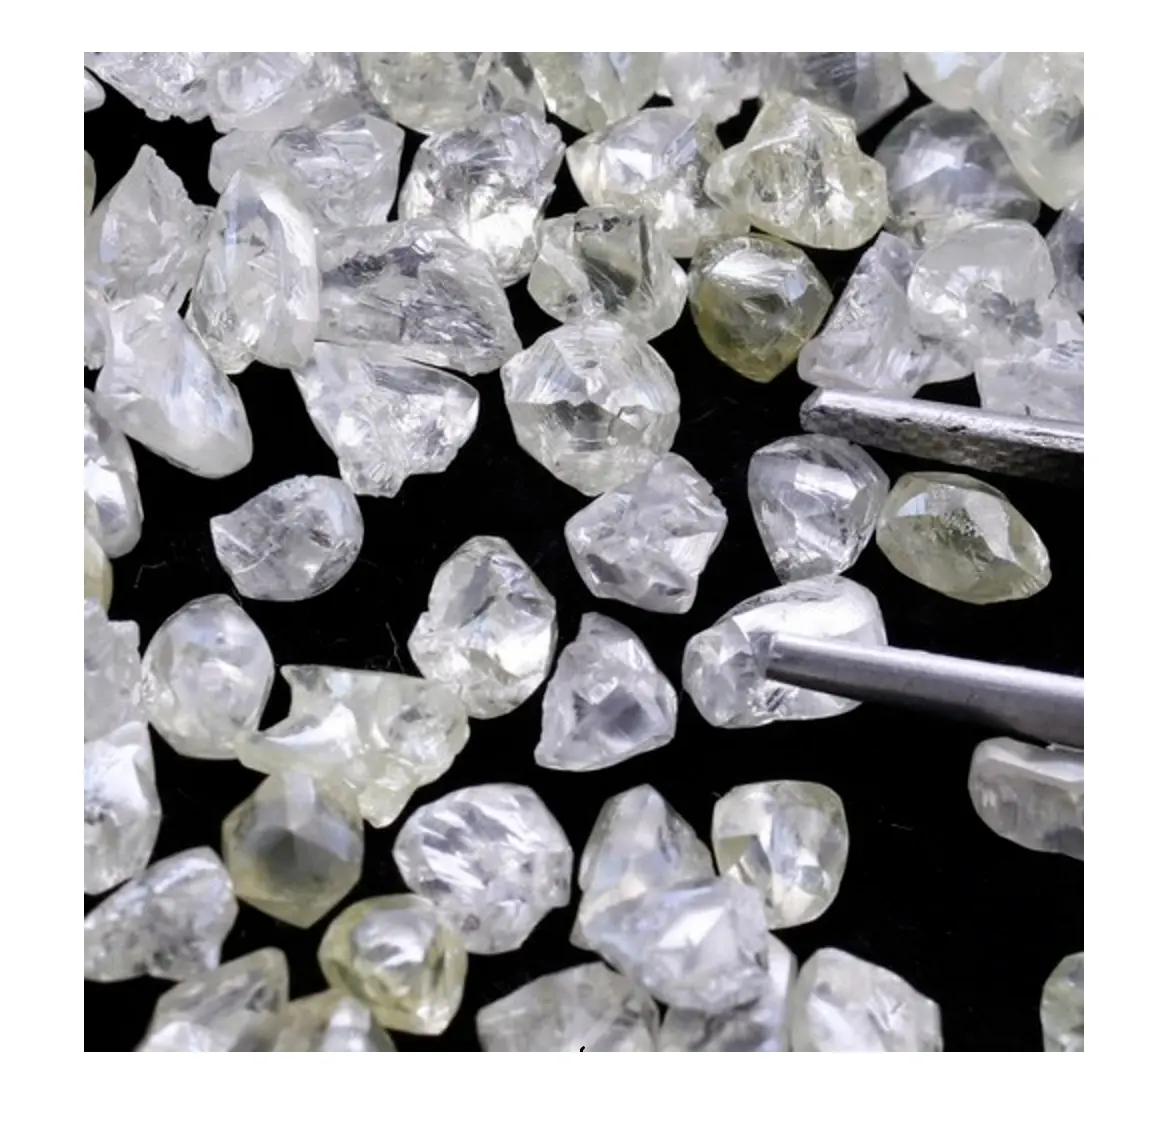 수출 품질 유엔 컷 거친 다이아몬드 합성 실험실 성장 느슨한 다이아몬드 투명 컷 도매 가격에 가능